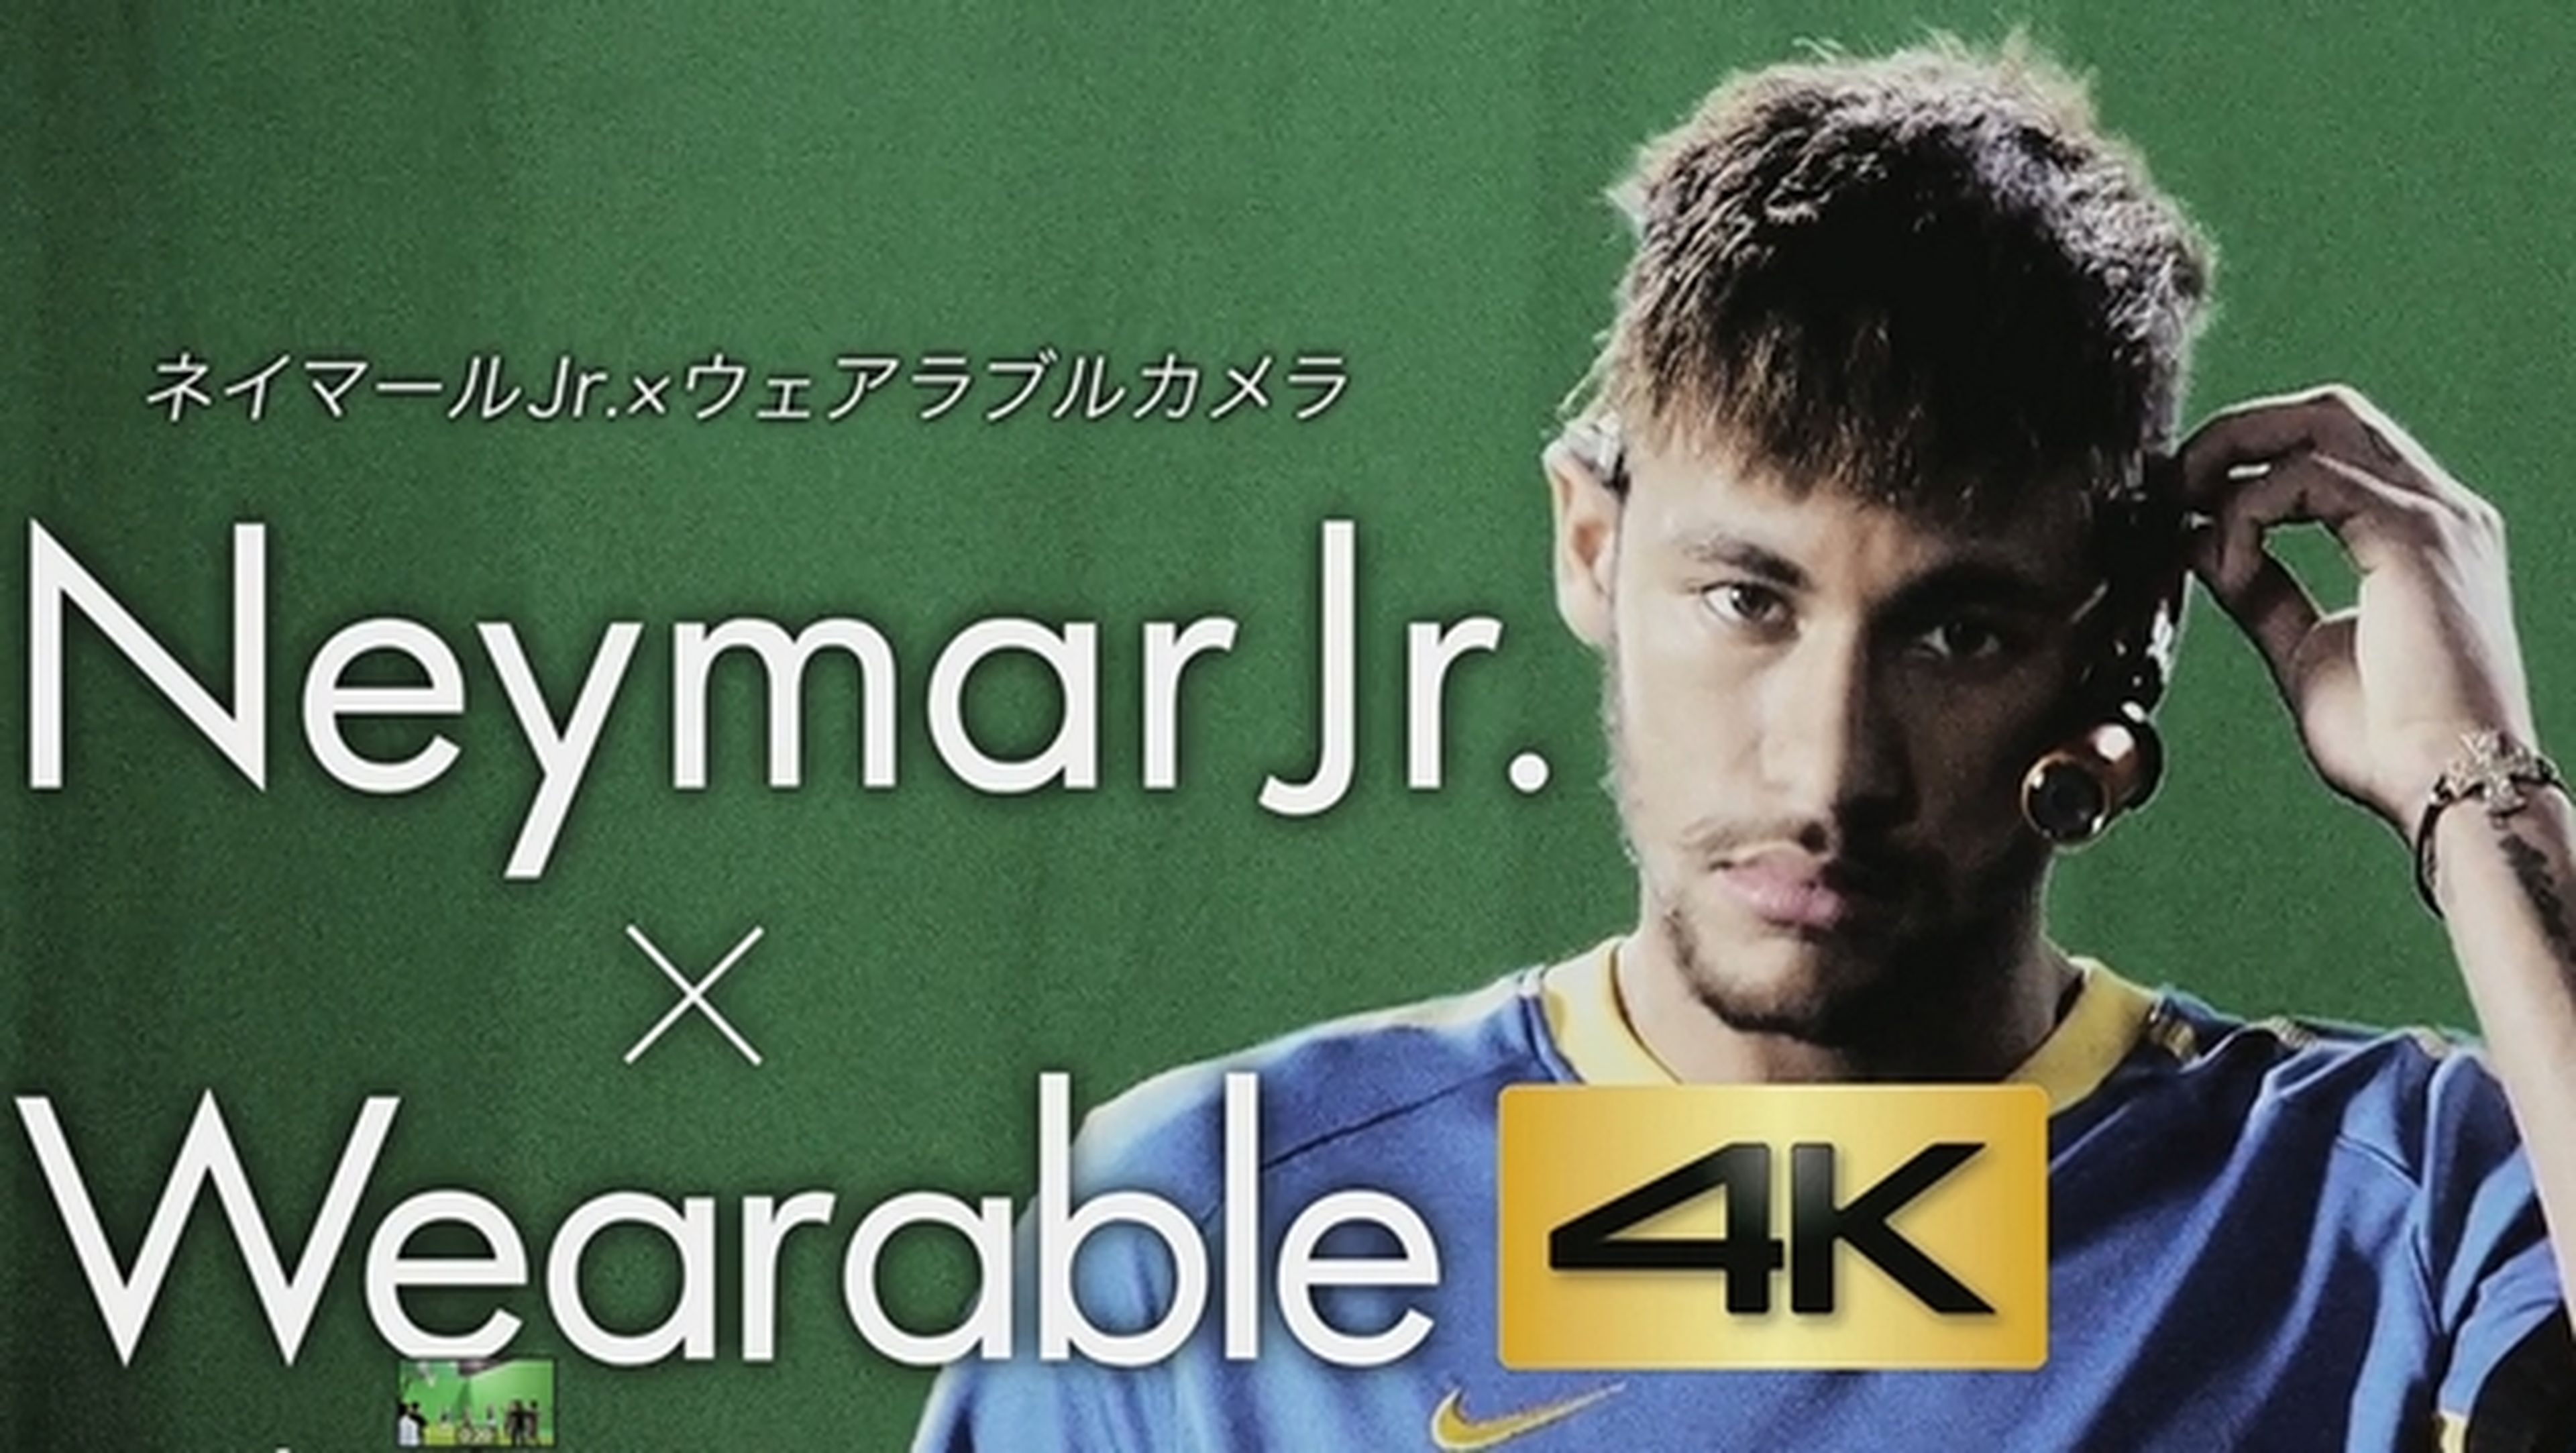 Neymar prueba la primera videocámara wearable con resolución 4K, la Panasonic HX-A500